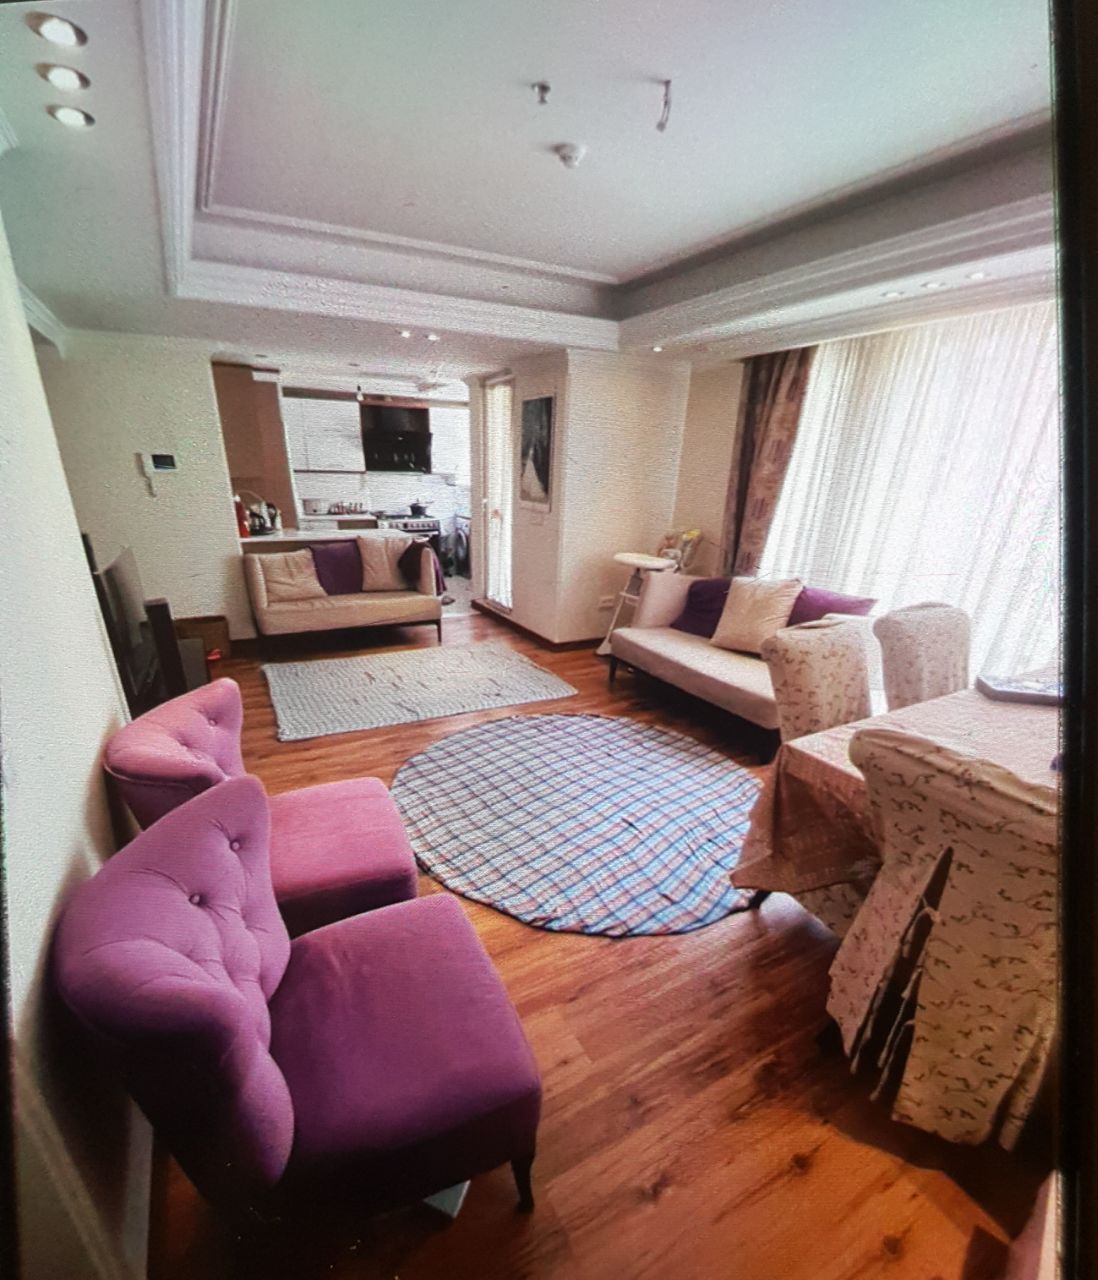 اجاره آپارتمان در یوسف آباد اسد آبادی بالاتراز پمپ بنزین 82 متر